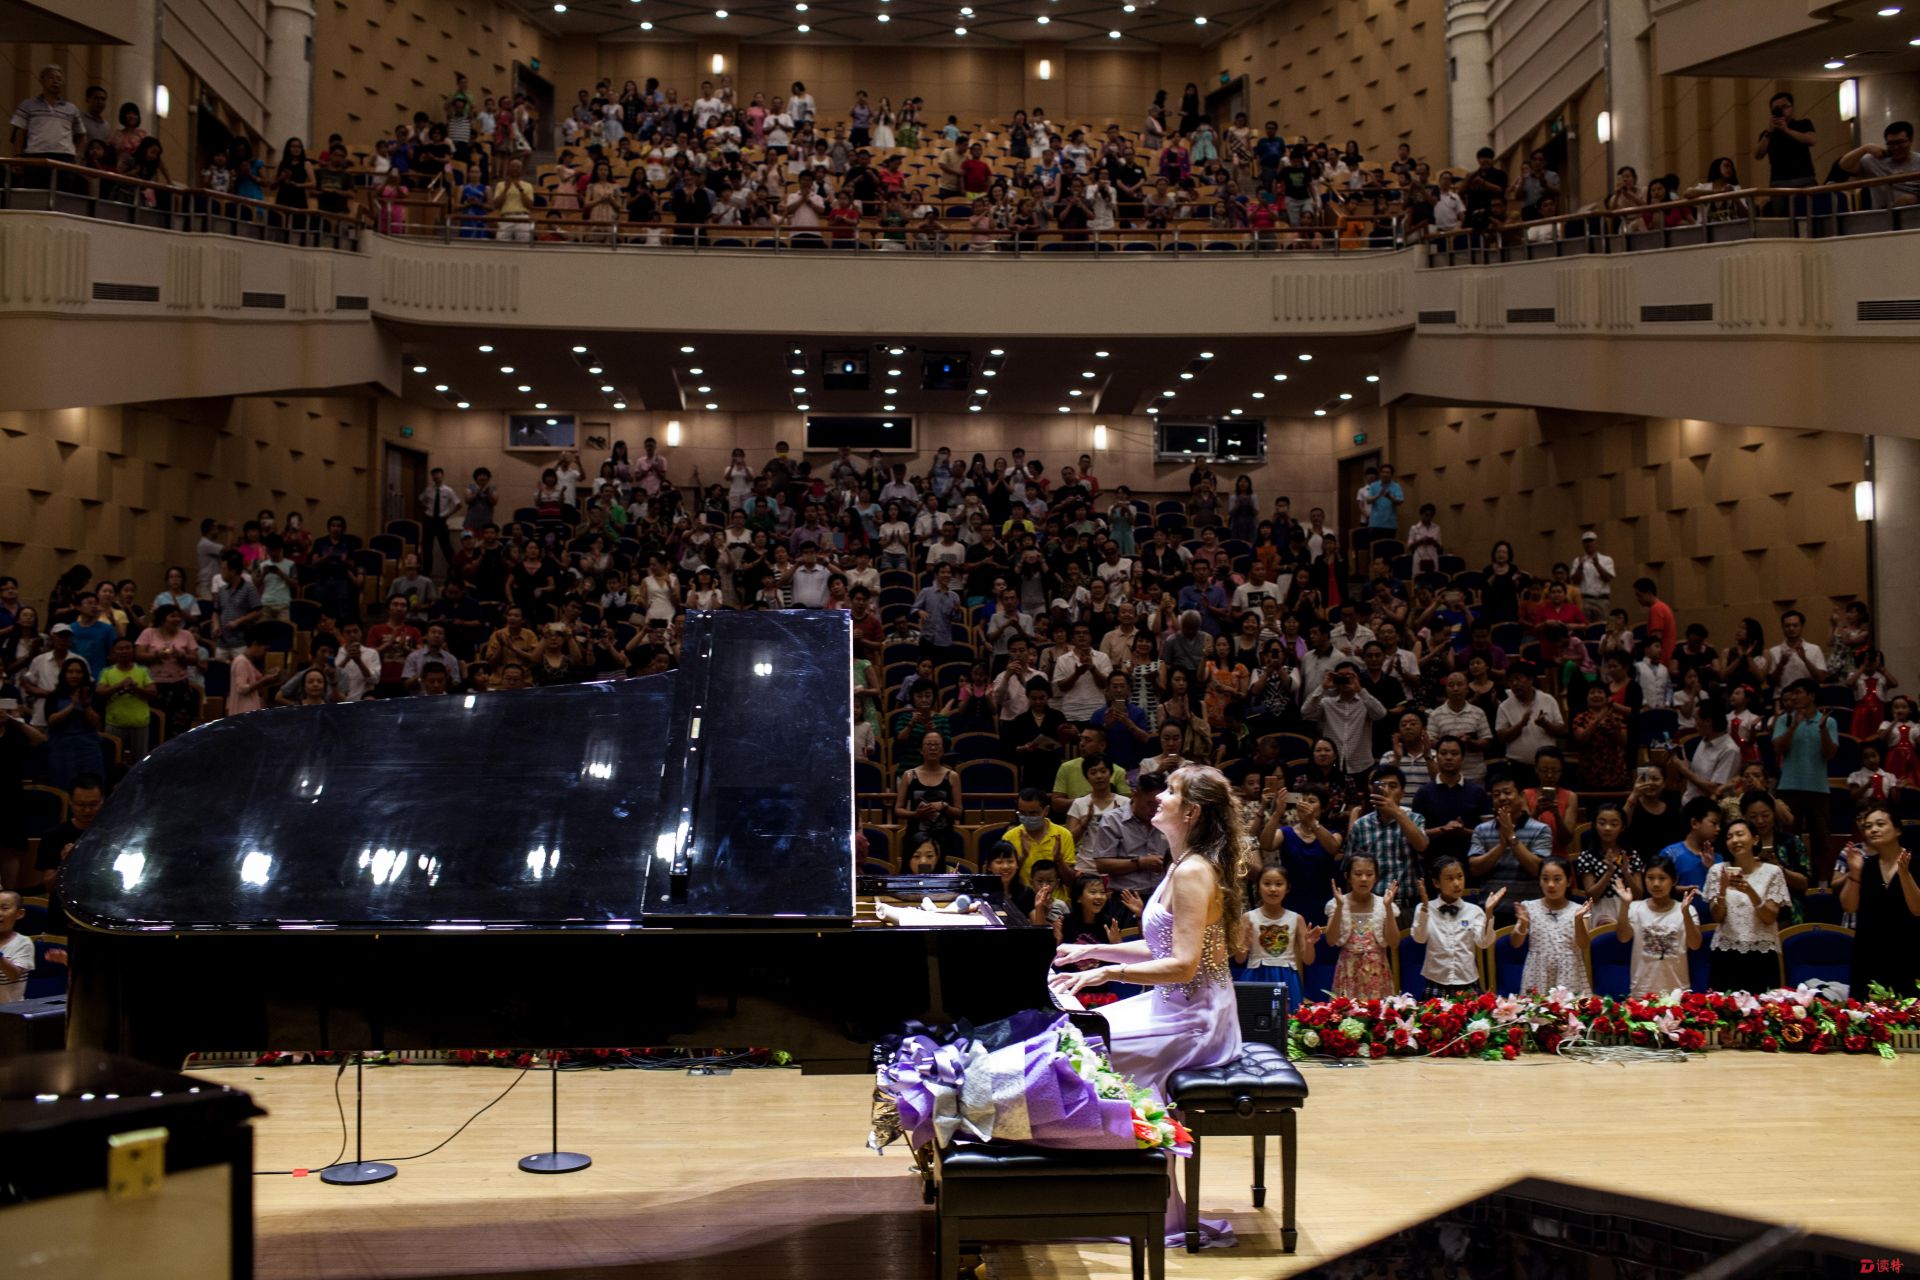 来自中国的小琴童们还将与钢琴公主一同演奏,给现场观众带来不同感受